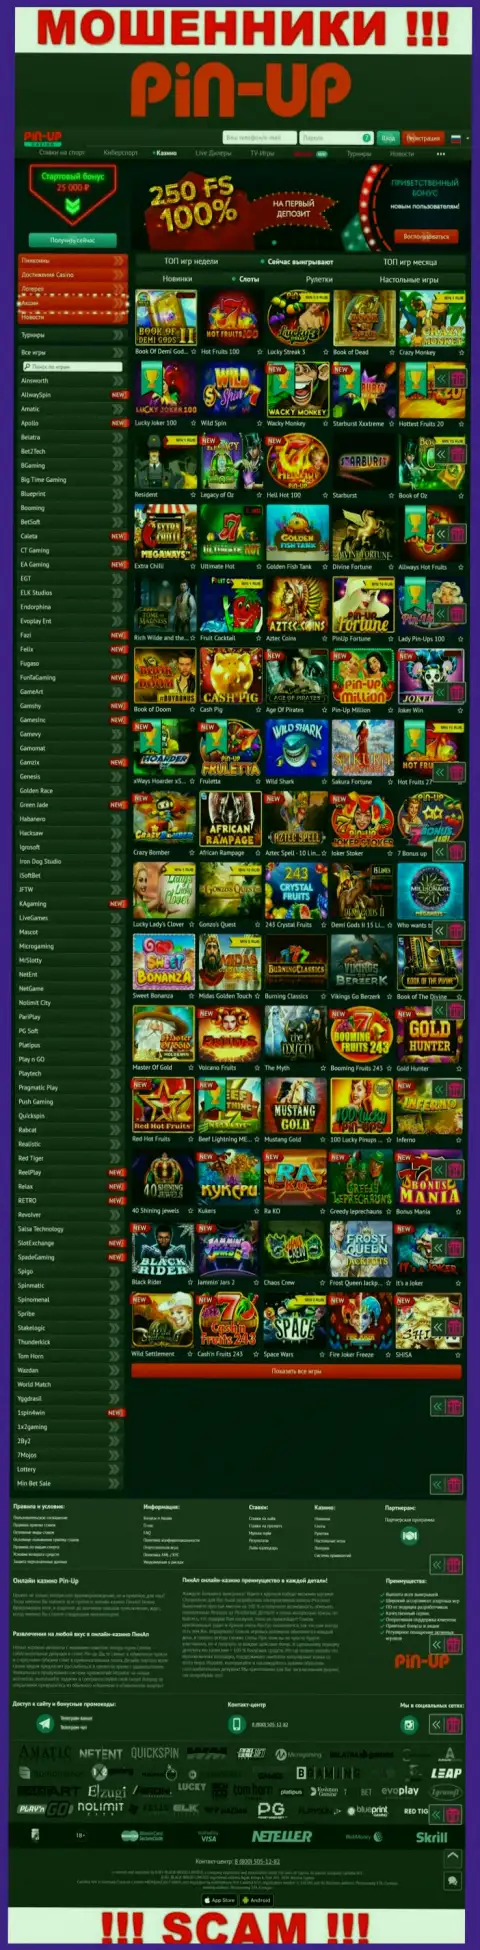 Pin-Up Casino - это официальный сайт интернет-шулеров PinUp Casino